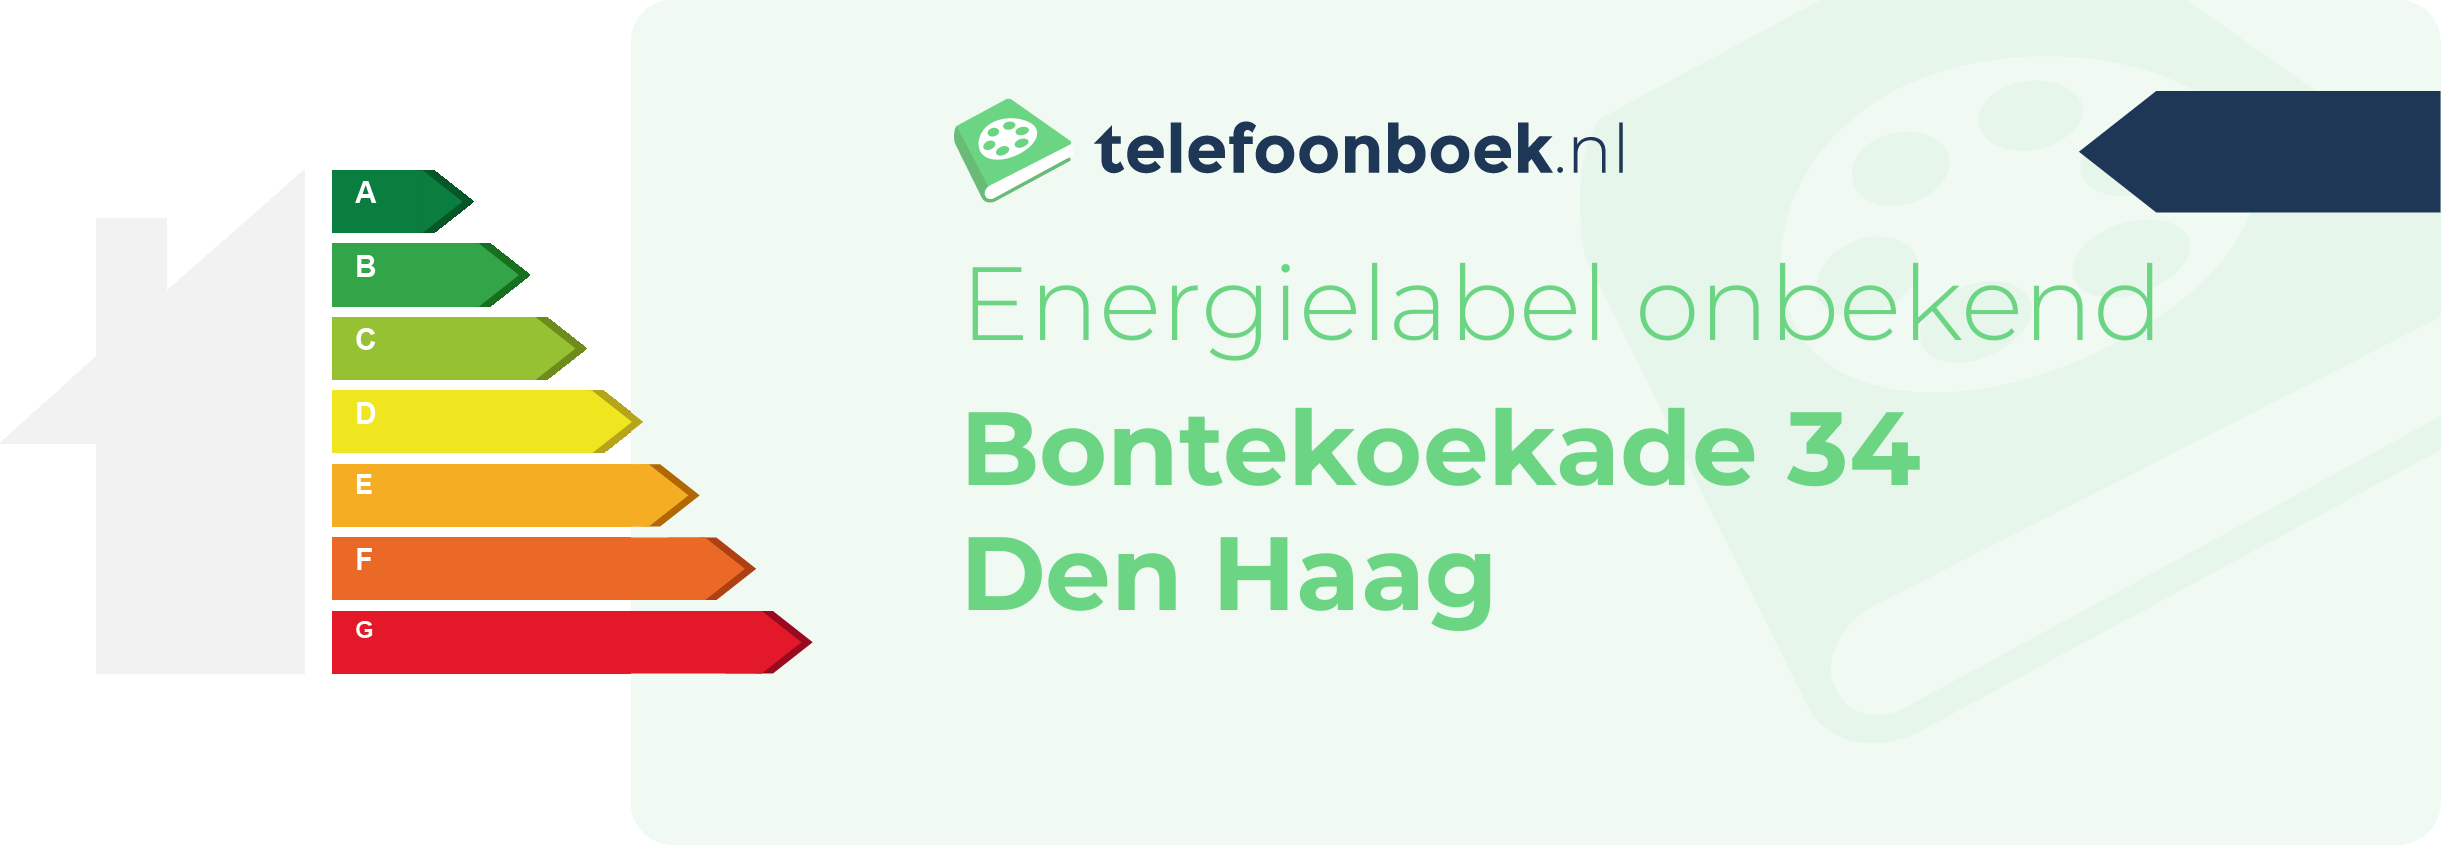 Energielabel Bontekoekade 34 Den Haag